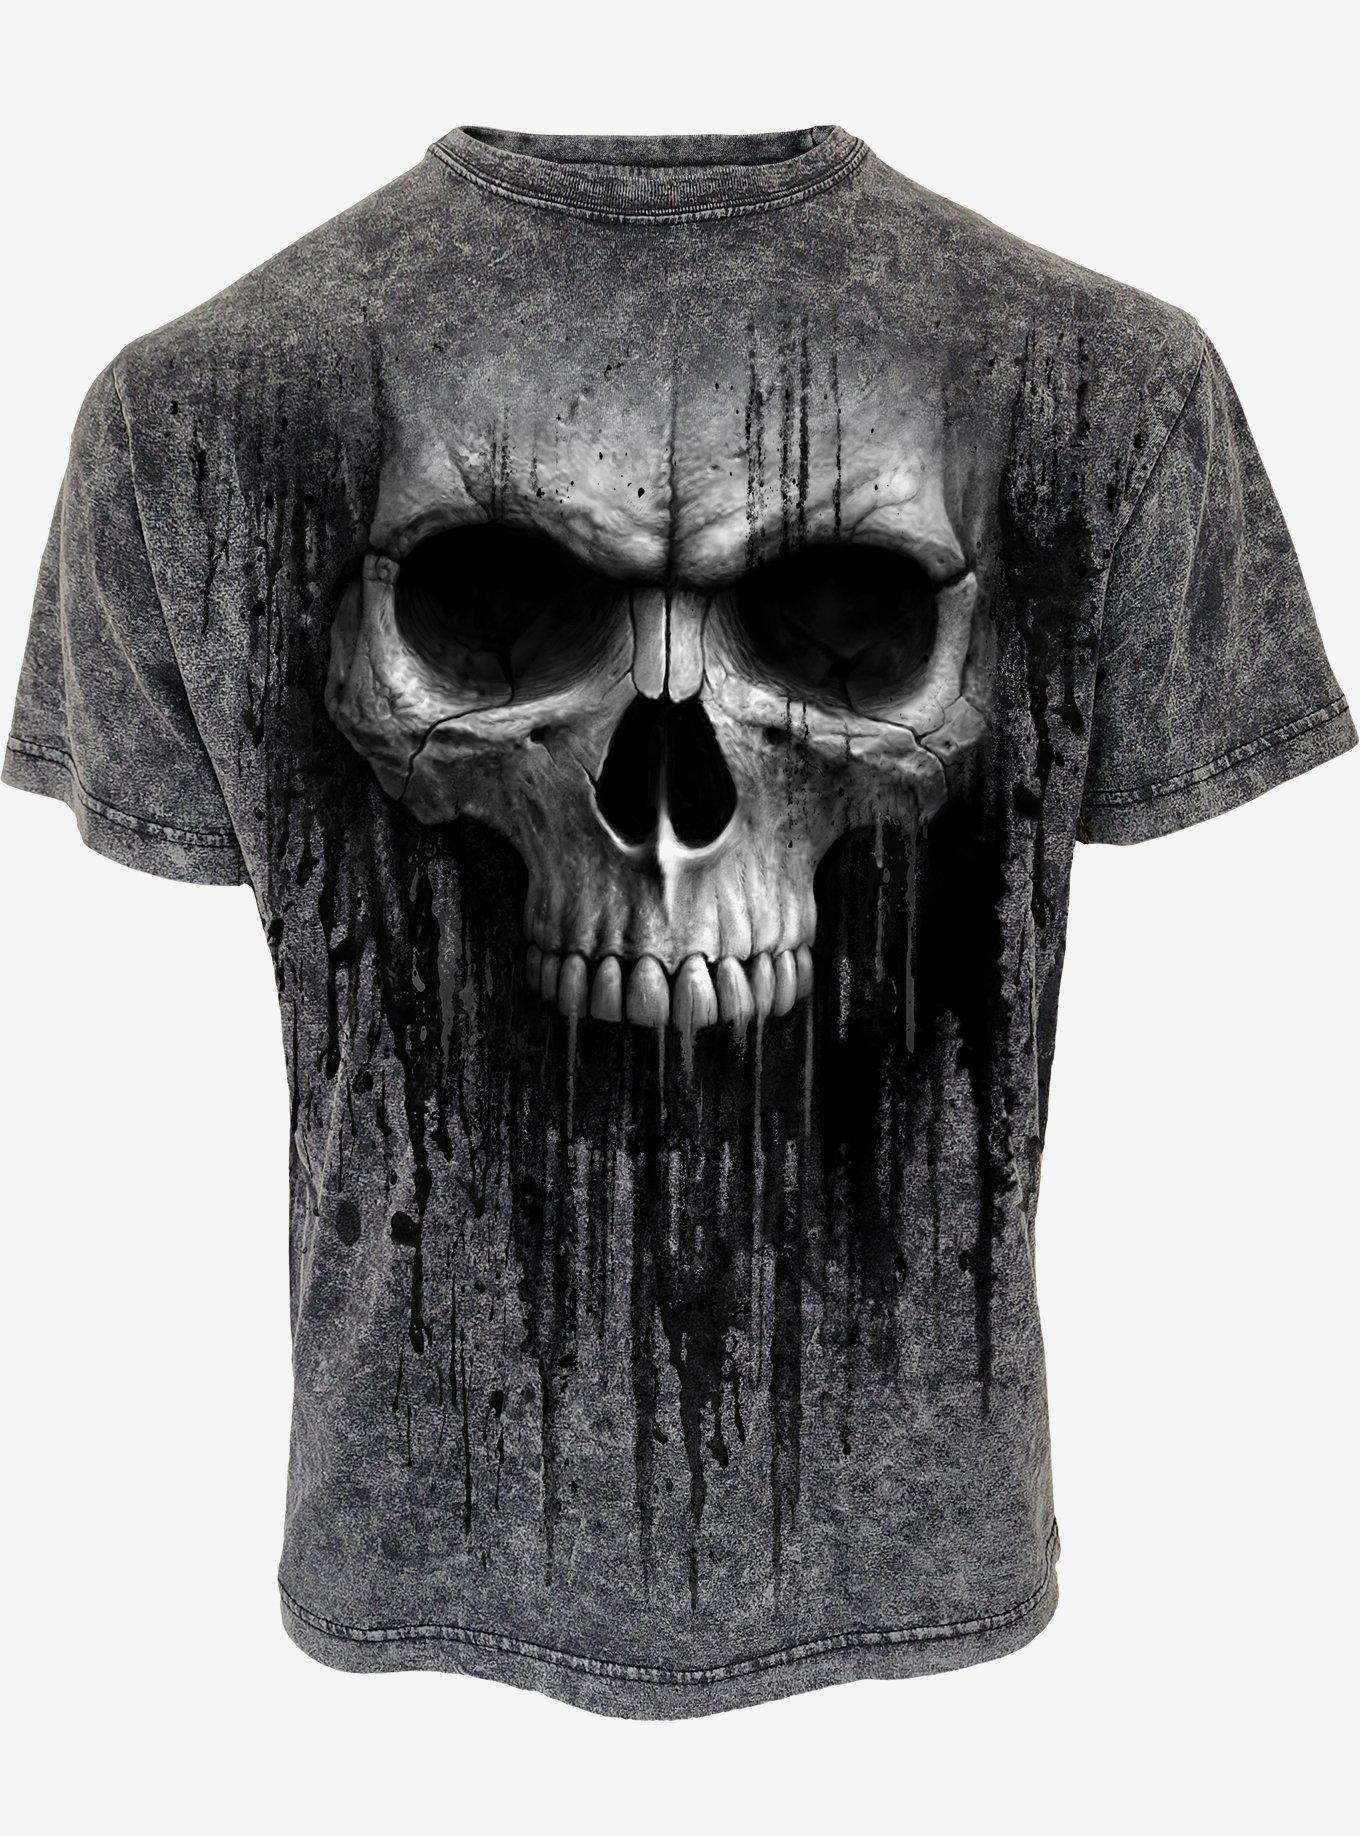 Acid Skull Acid Wash T-Shirt, BLACK, hi-res